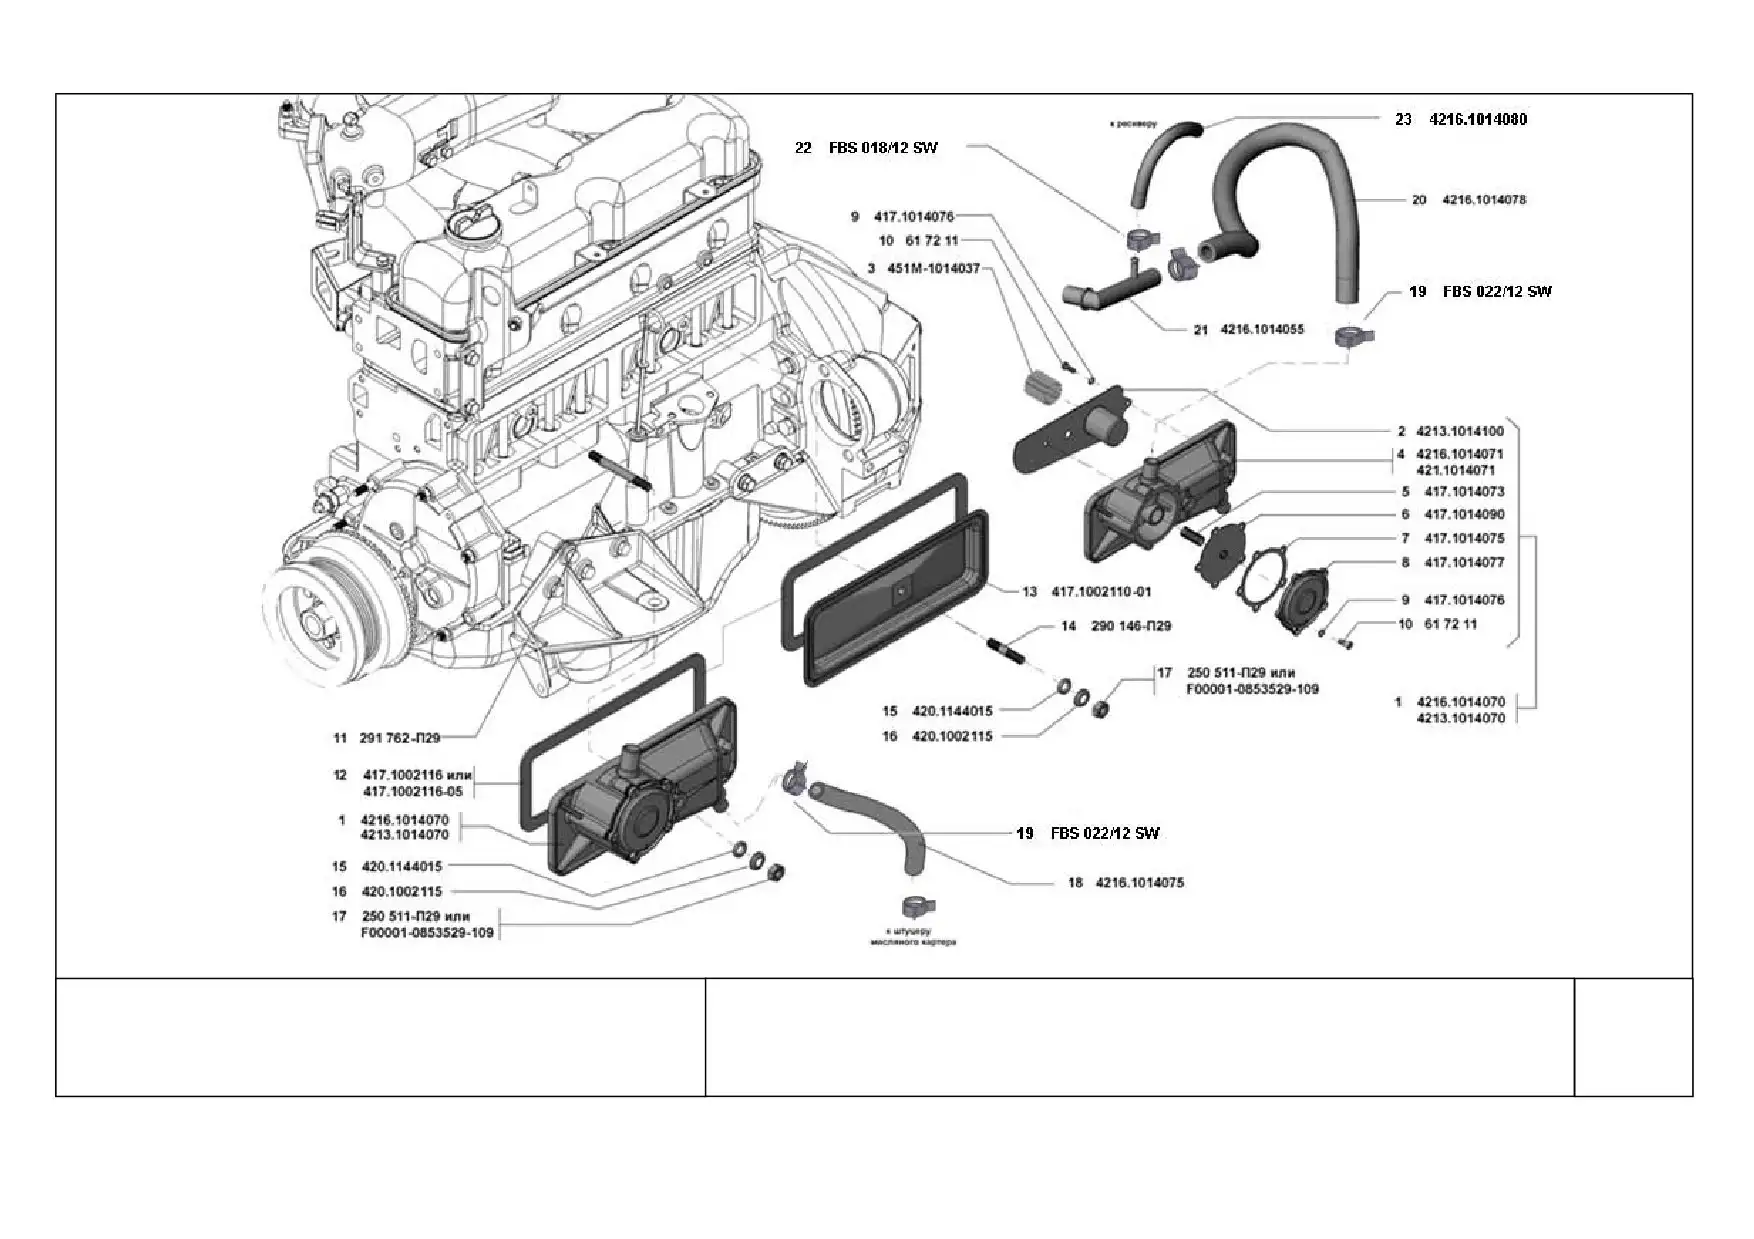 Система охлаждения двигателя ГАЗ-3309